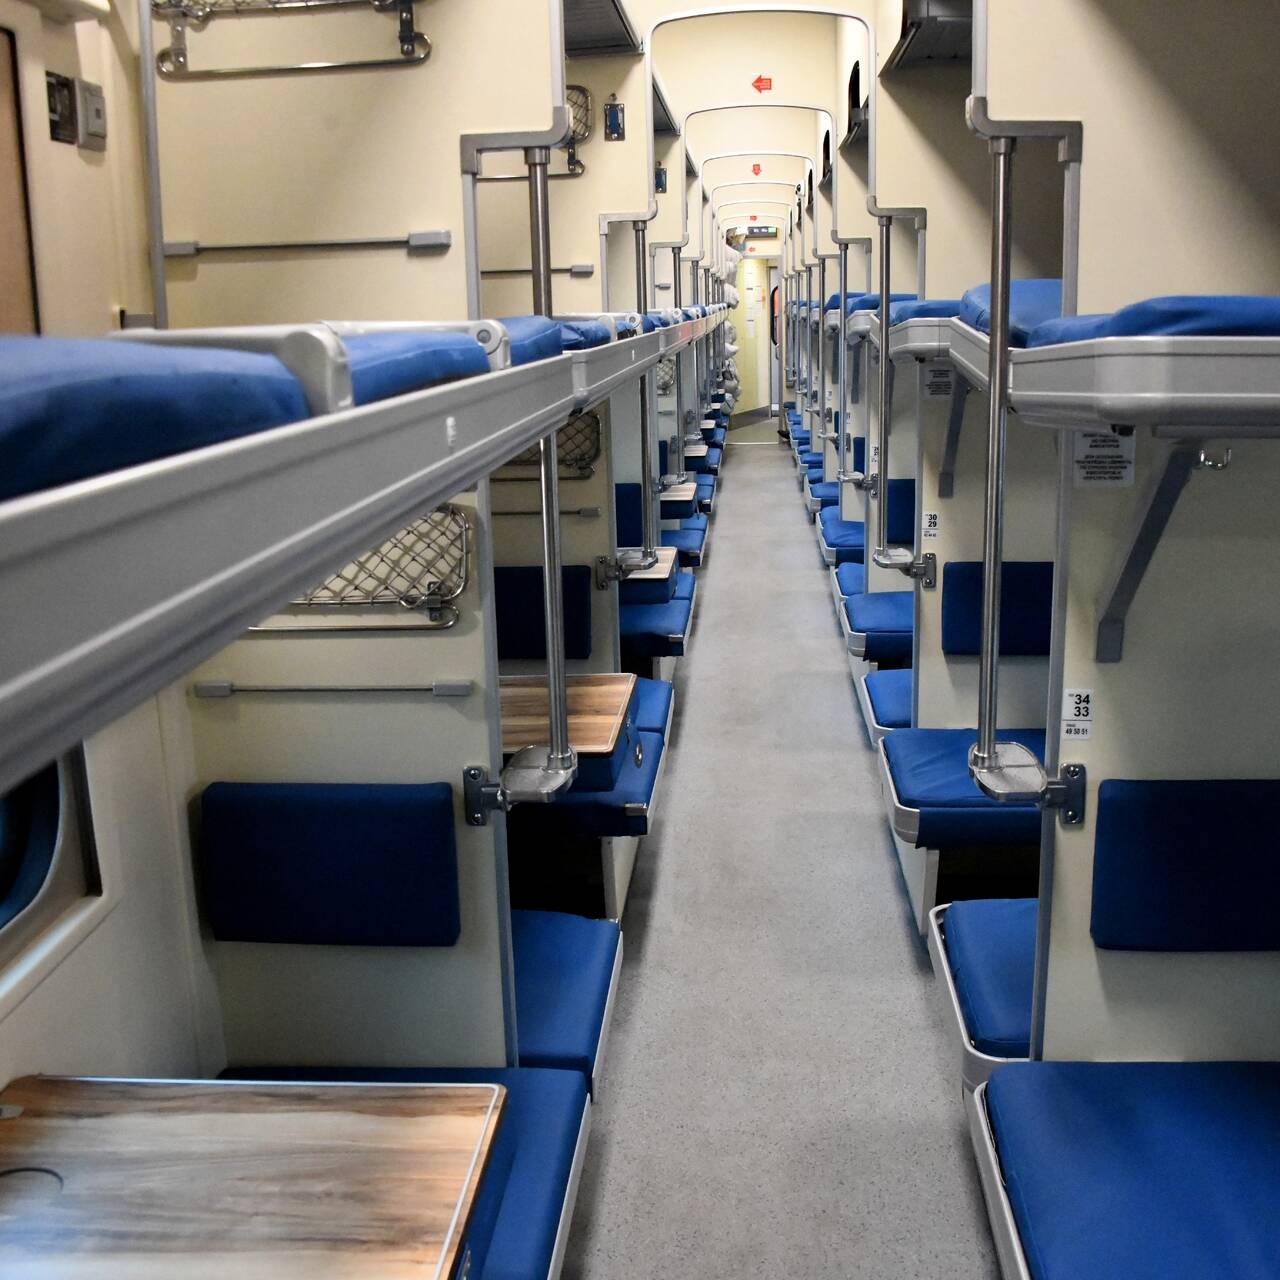 стол в поезде только для нижних мест